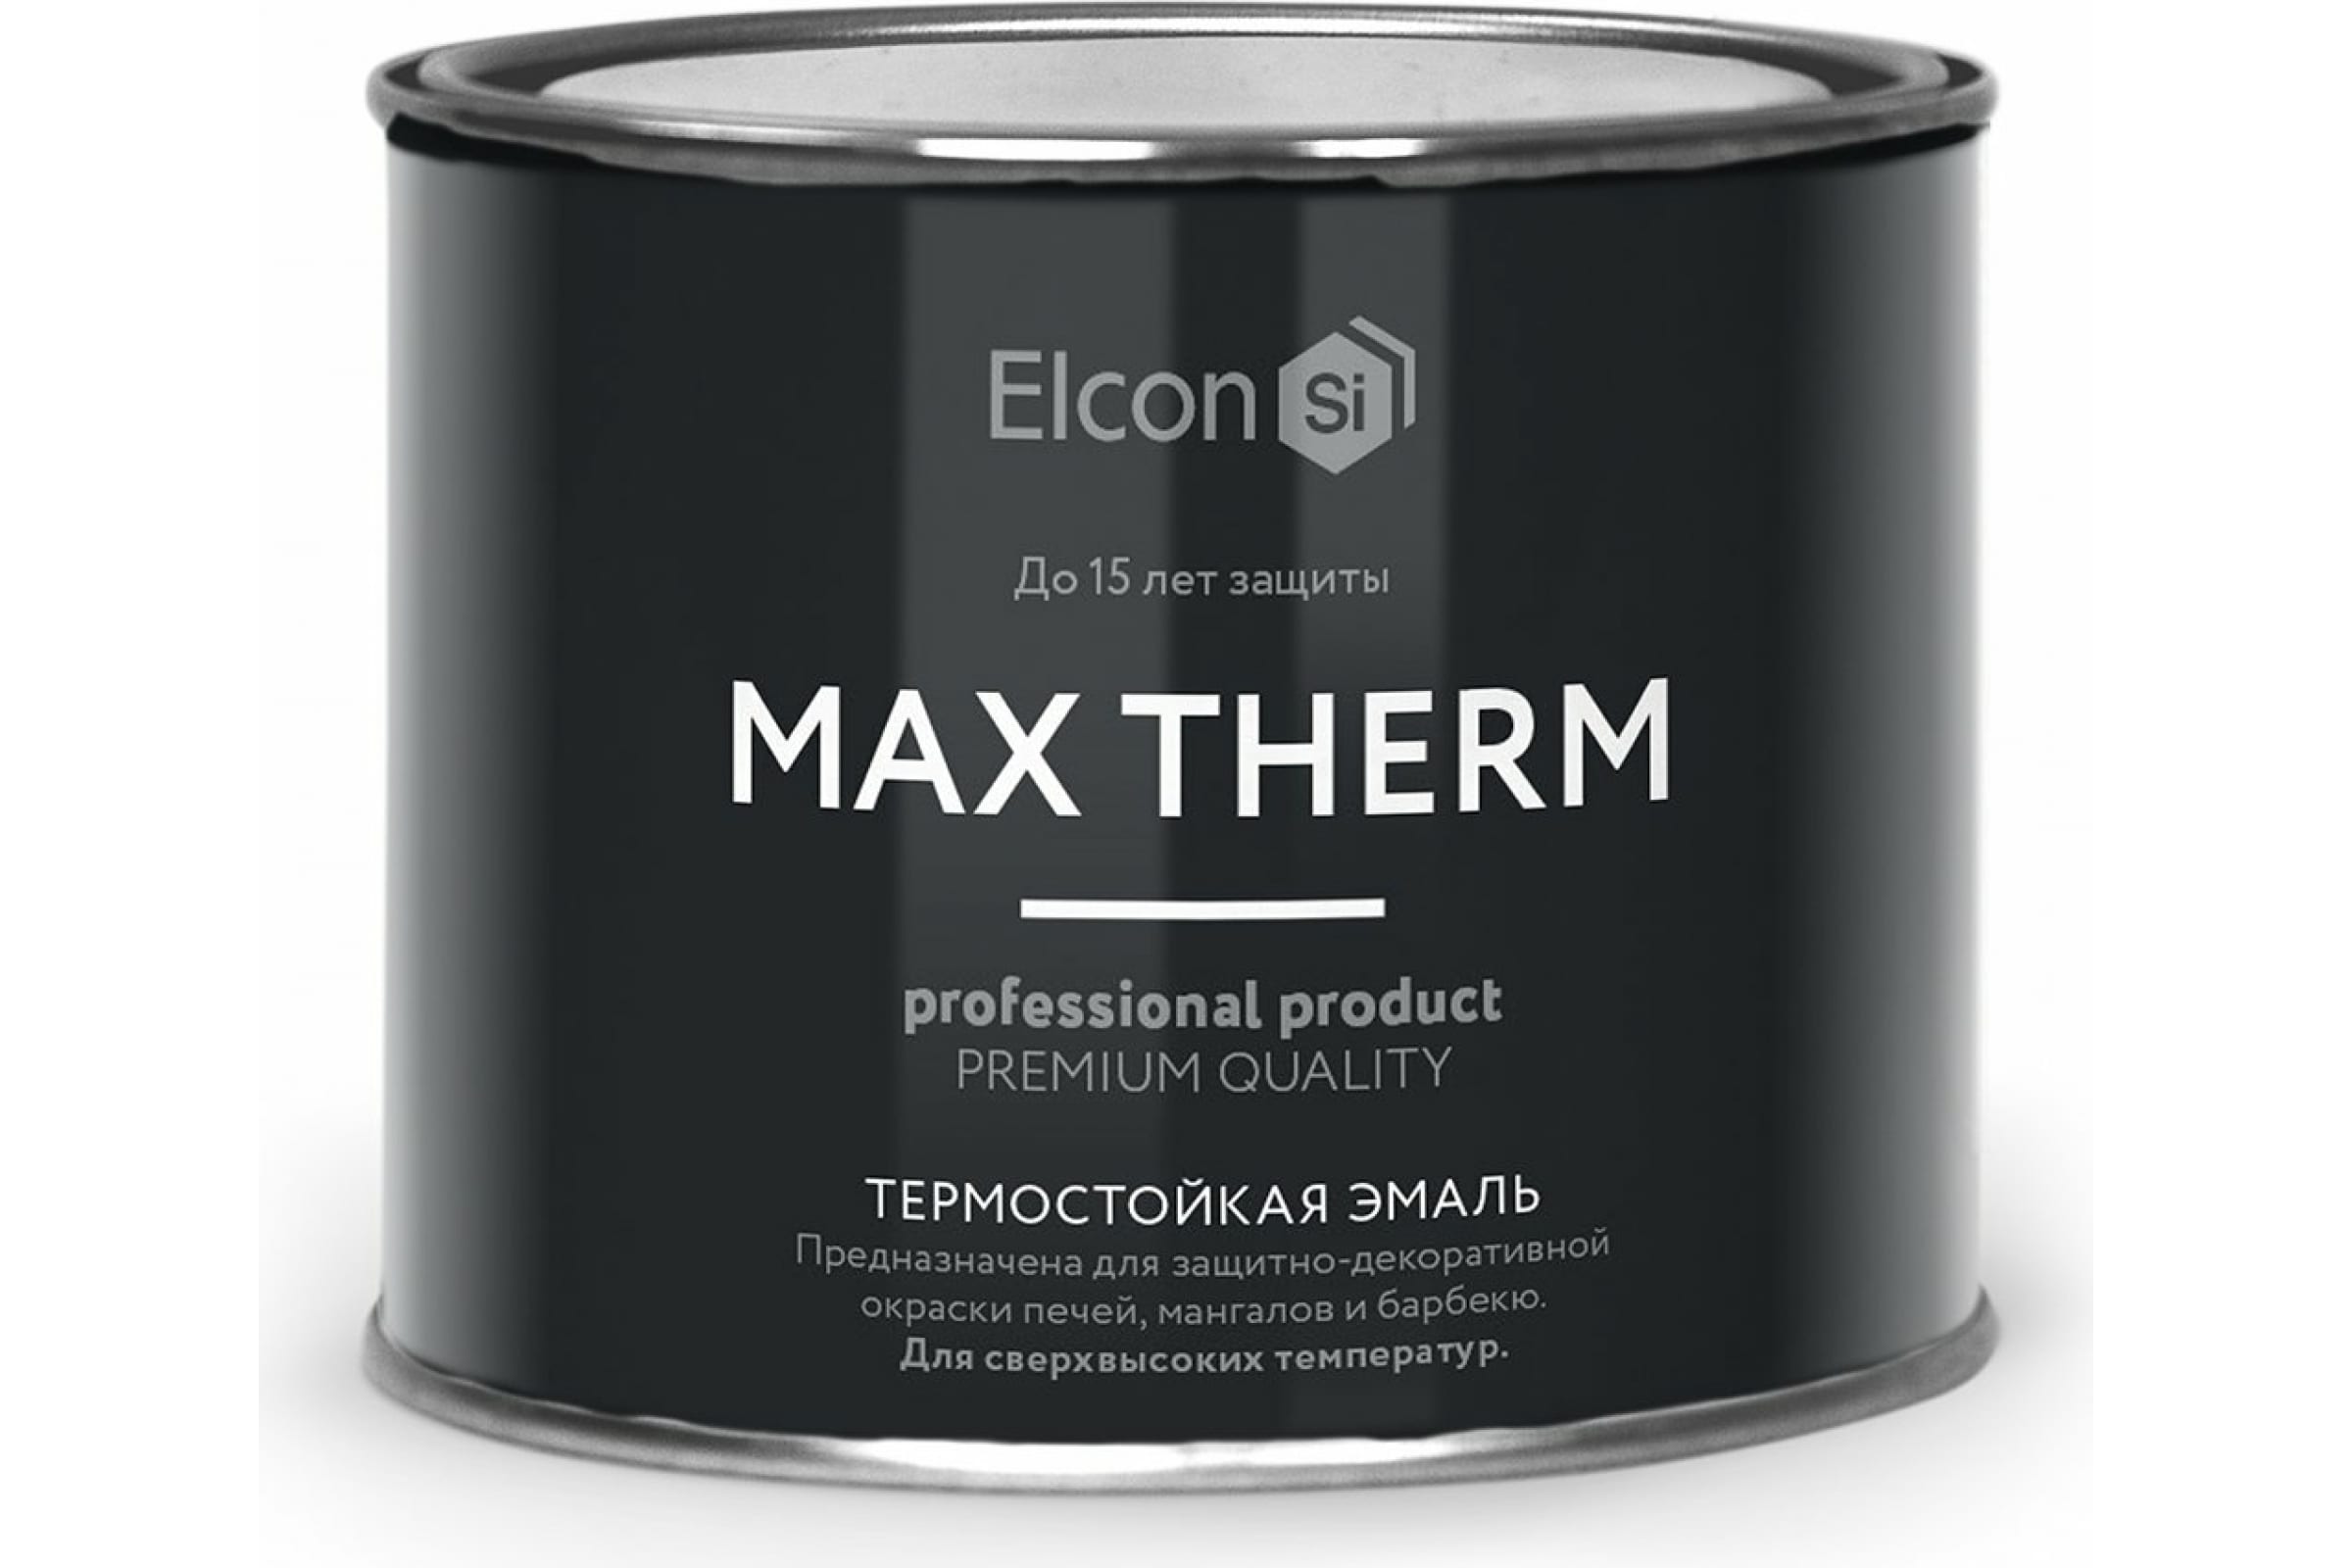 Термостойкая антикоррозионная эмаль Elcon Max Therm до 400 градусов, 0,4 л, желтая термостойкая антикоррозионная эмаль elcon max therm до 700 градусов 0 4 л серебристая